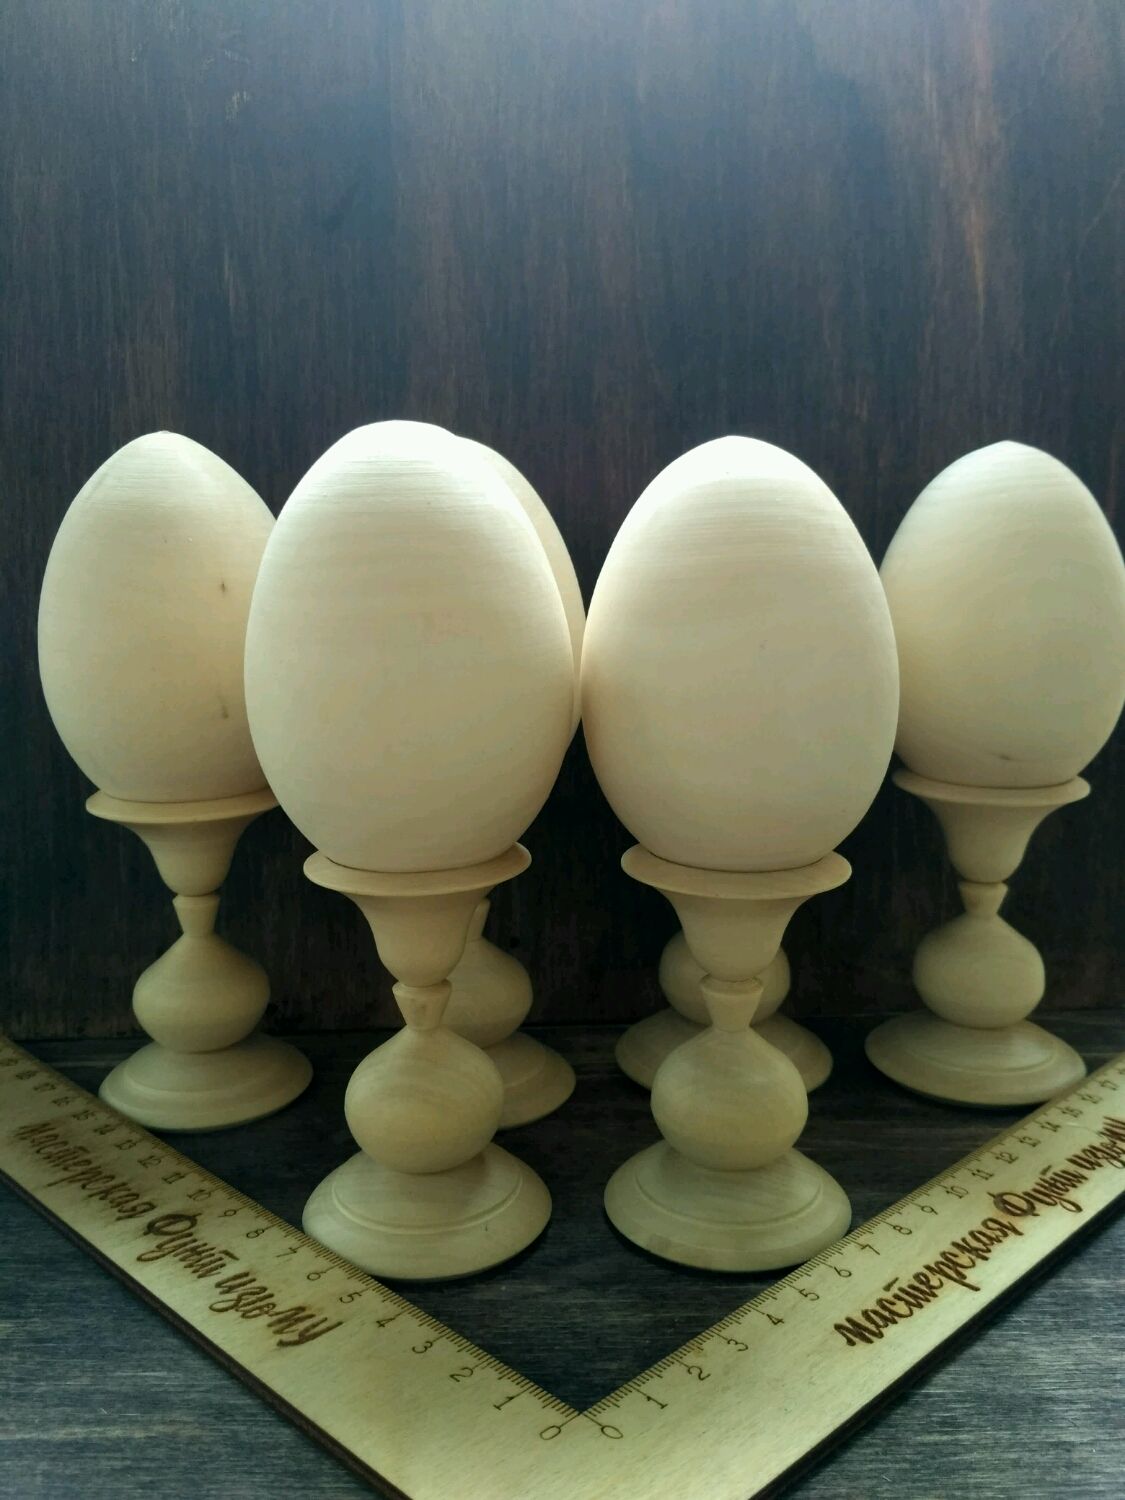 Заготовка пасхального яйца. Яйцо деревянное на подставке. Подставка под яйца деревянная. Яйцо деревянное заготовка. Деревянная подставка для пасхальных яиц.